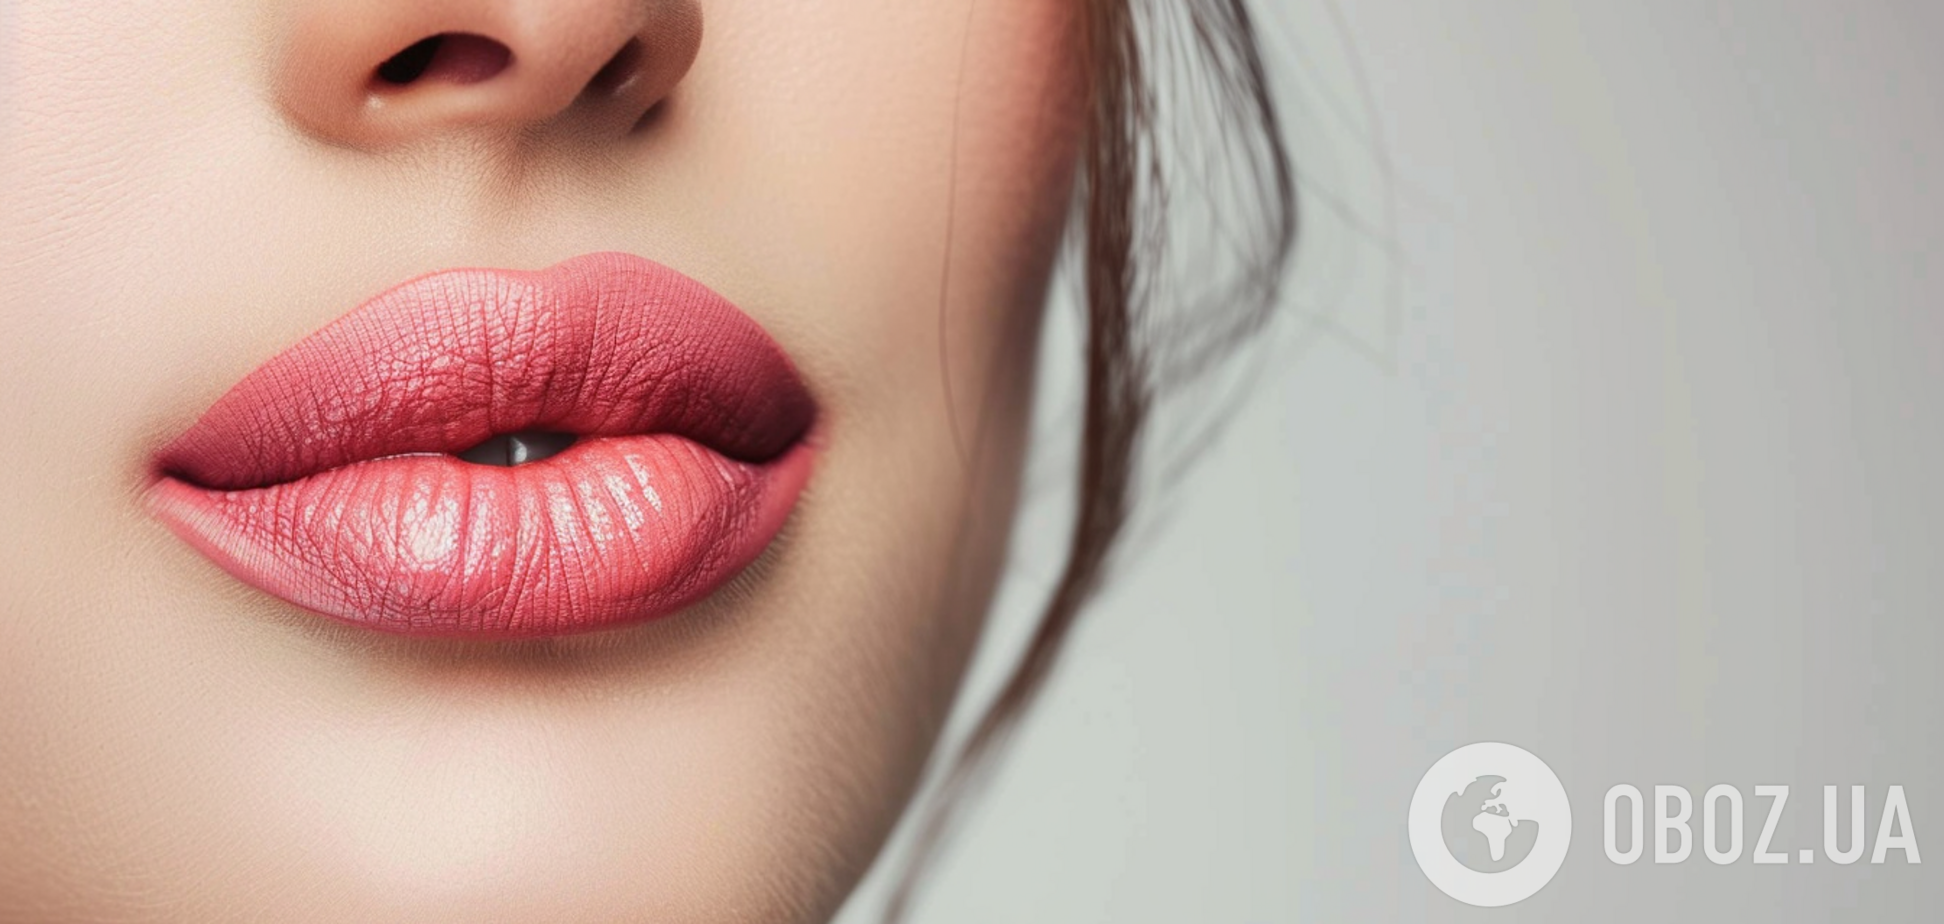 Як фарбувати губи, щоб мати набагато молодший вигляд: порада візажиста